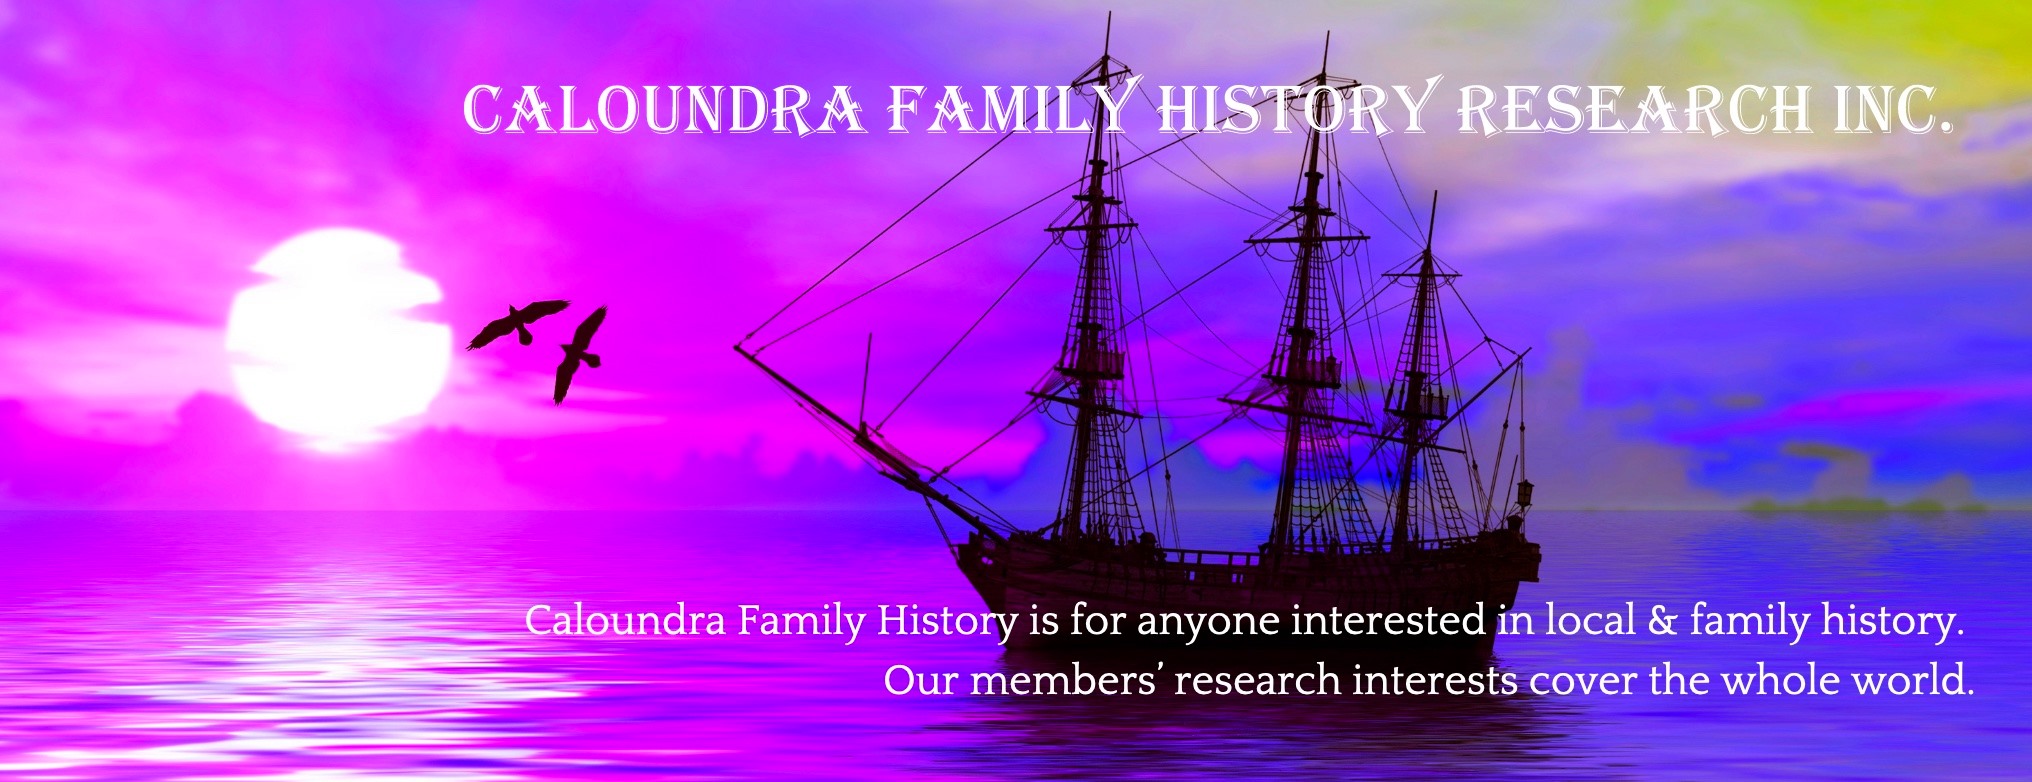 Caloundra Family History